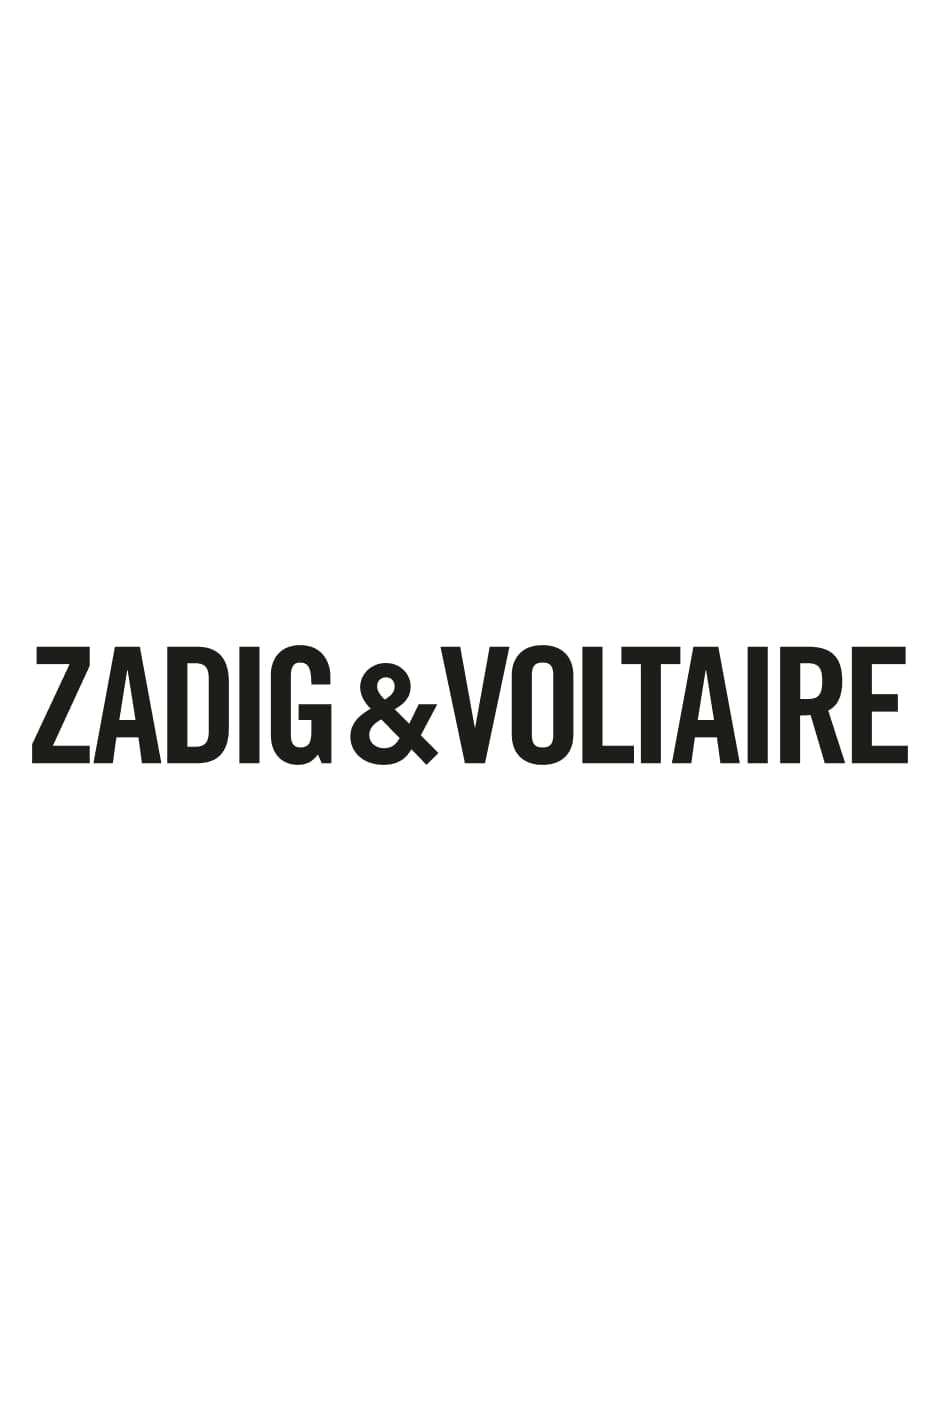 Bandoulière Zadig Cuir Bandoulilère femme ajustable amovible jacquard kaki contrasté irisé